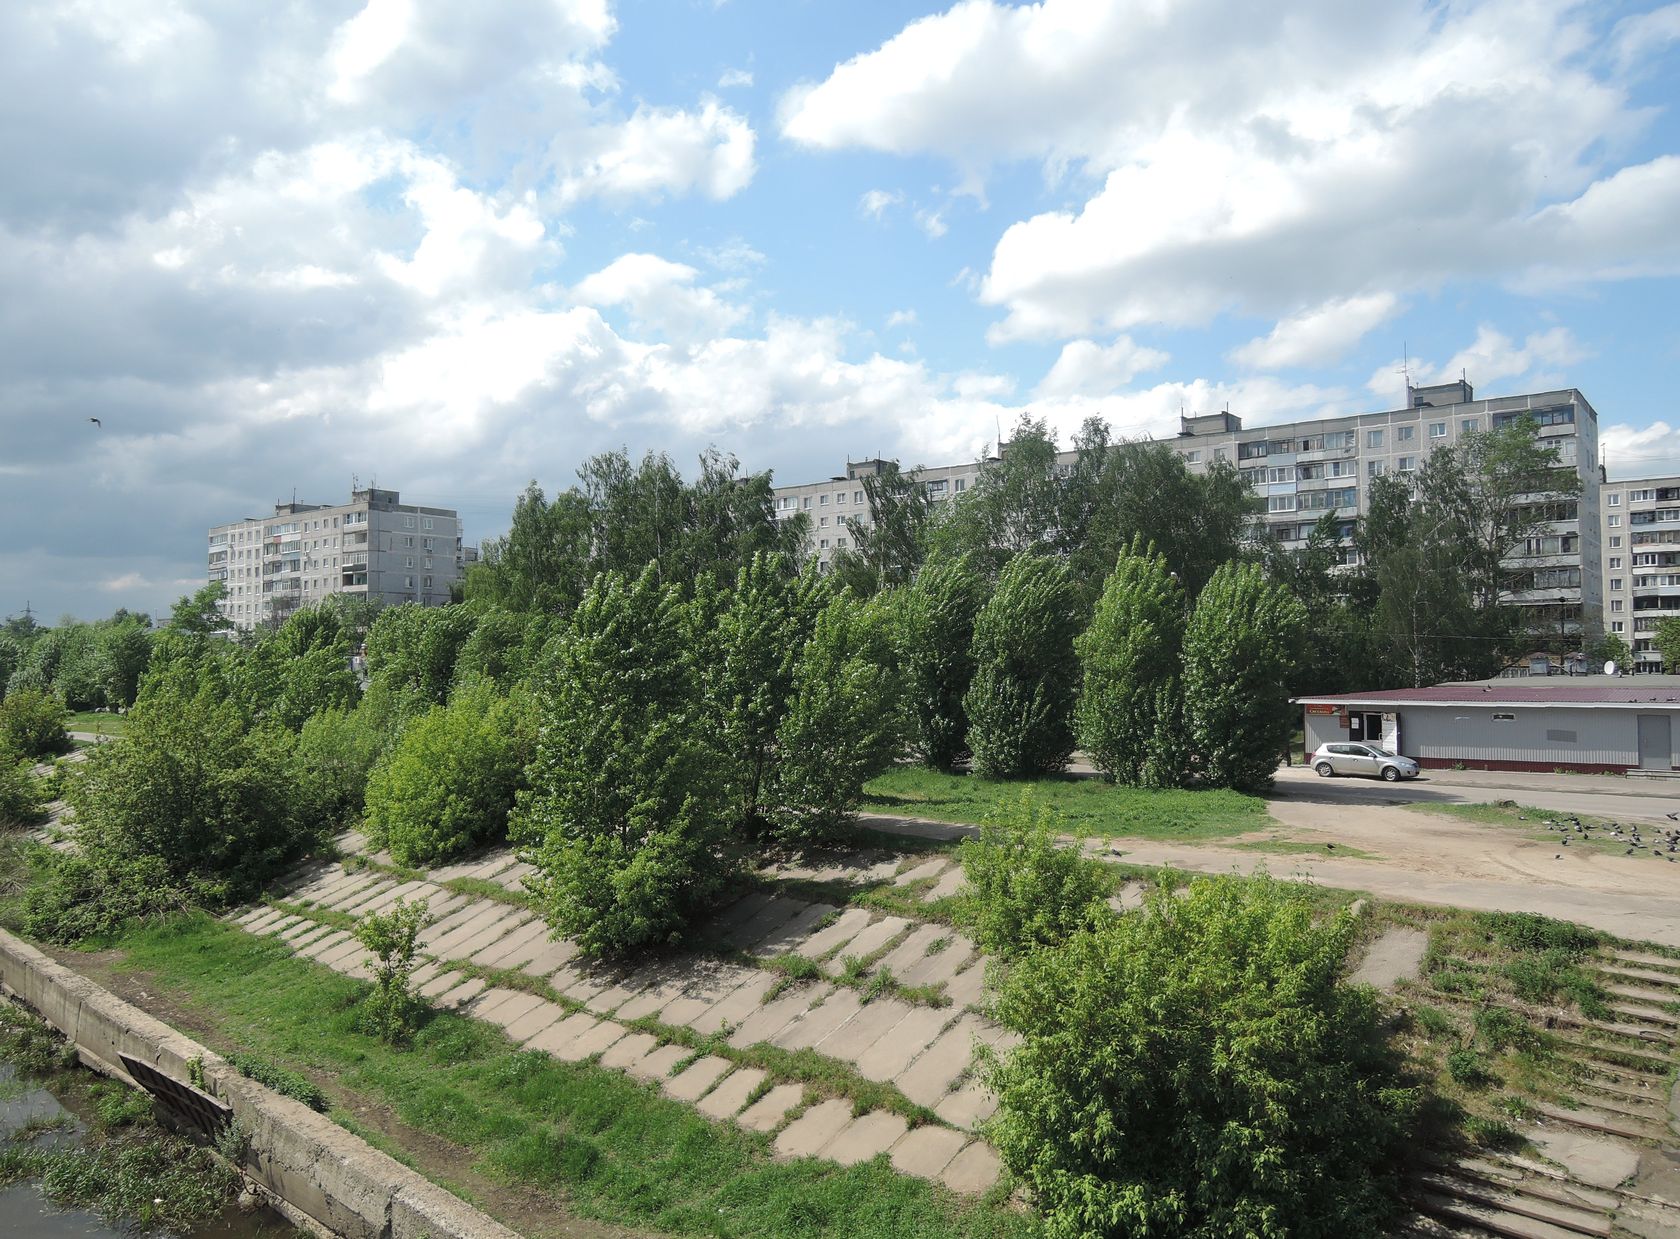 Орехово-Зуево и окрестности, изображение ландшафта.